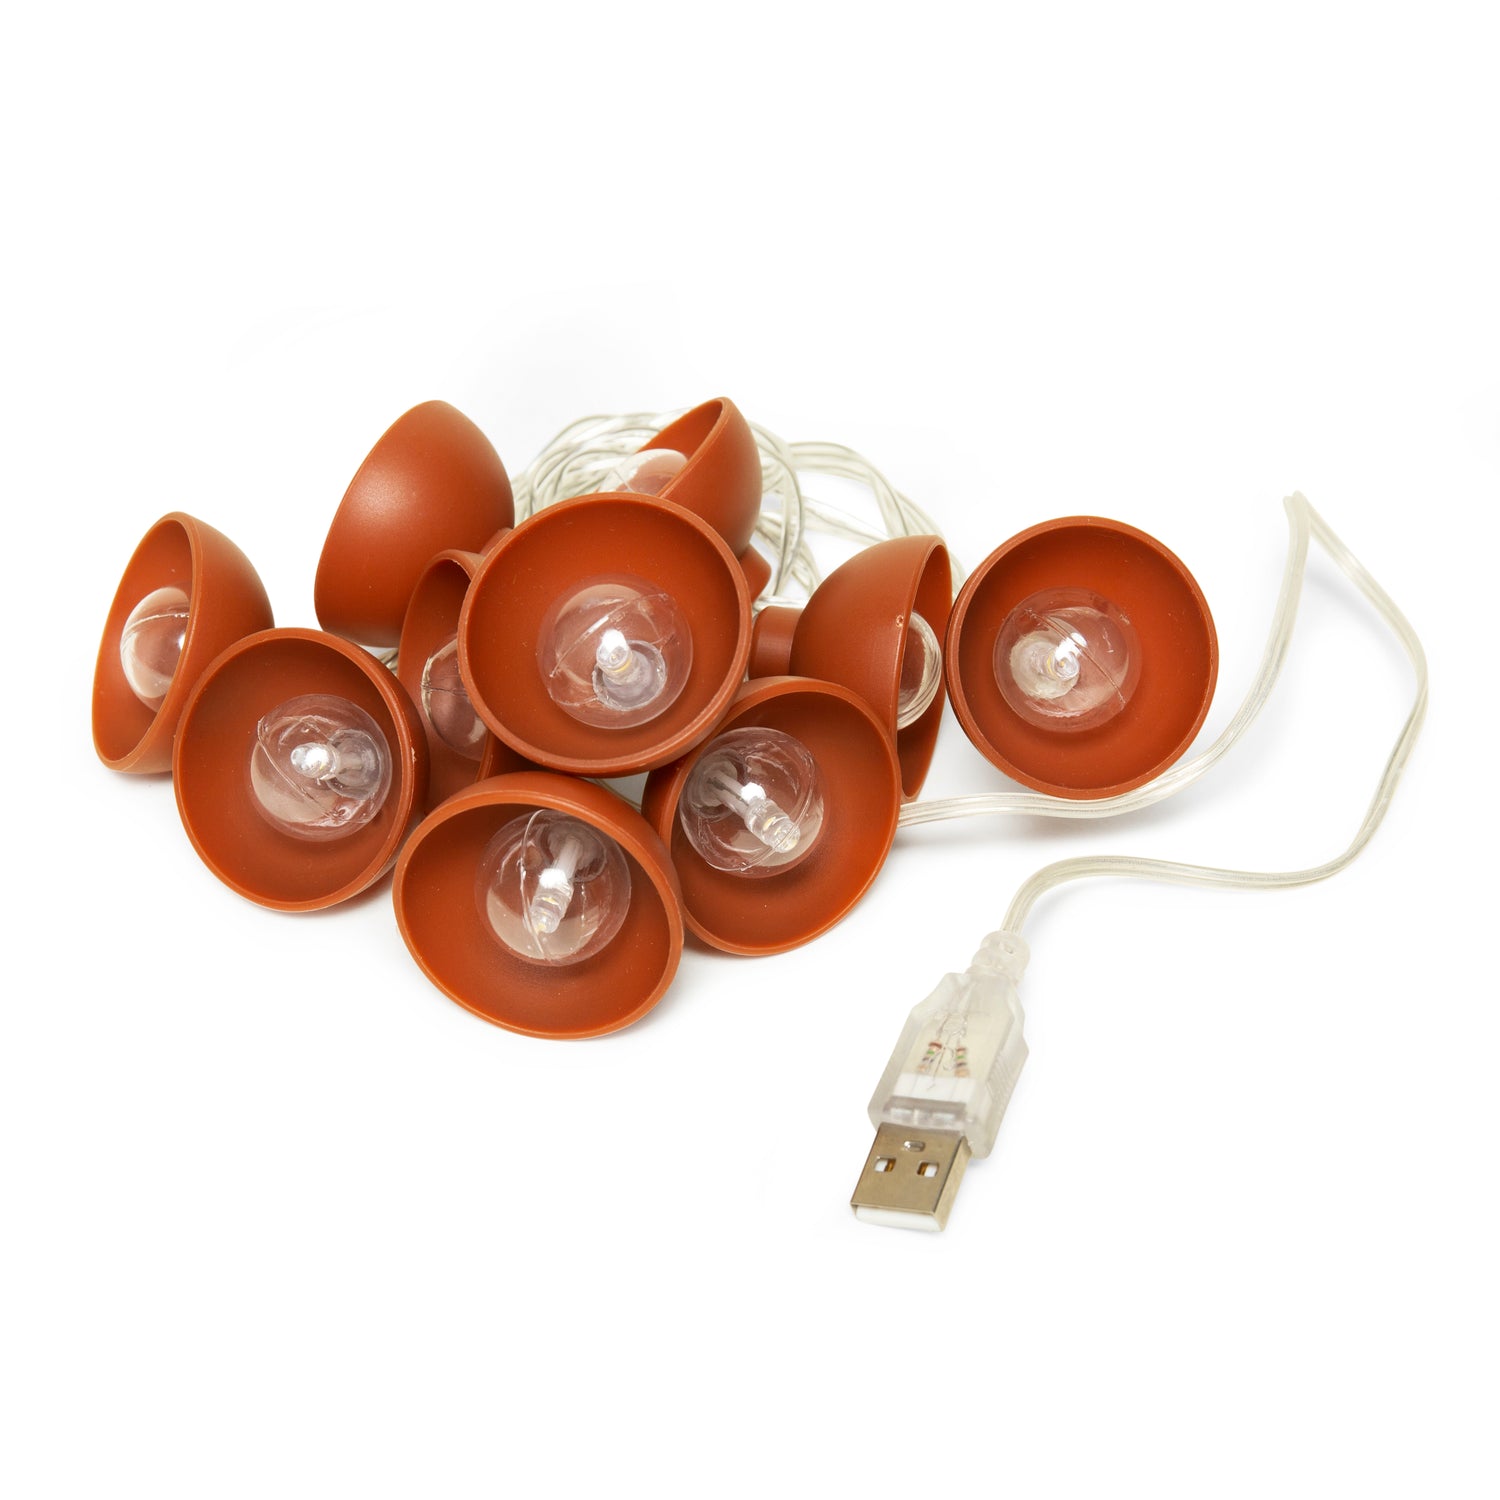 Terracotta Egg Holder – Kikkerland Design Inc